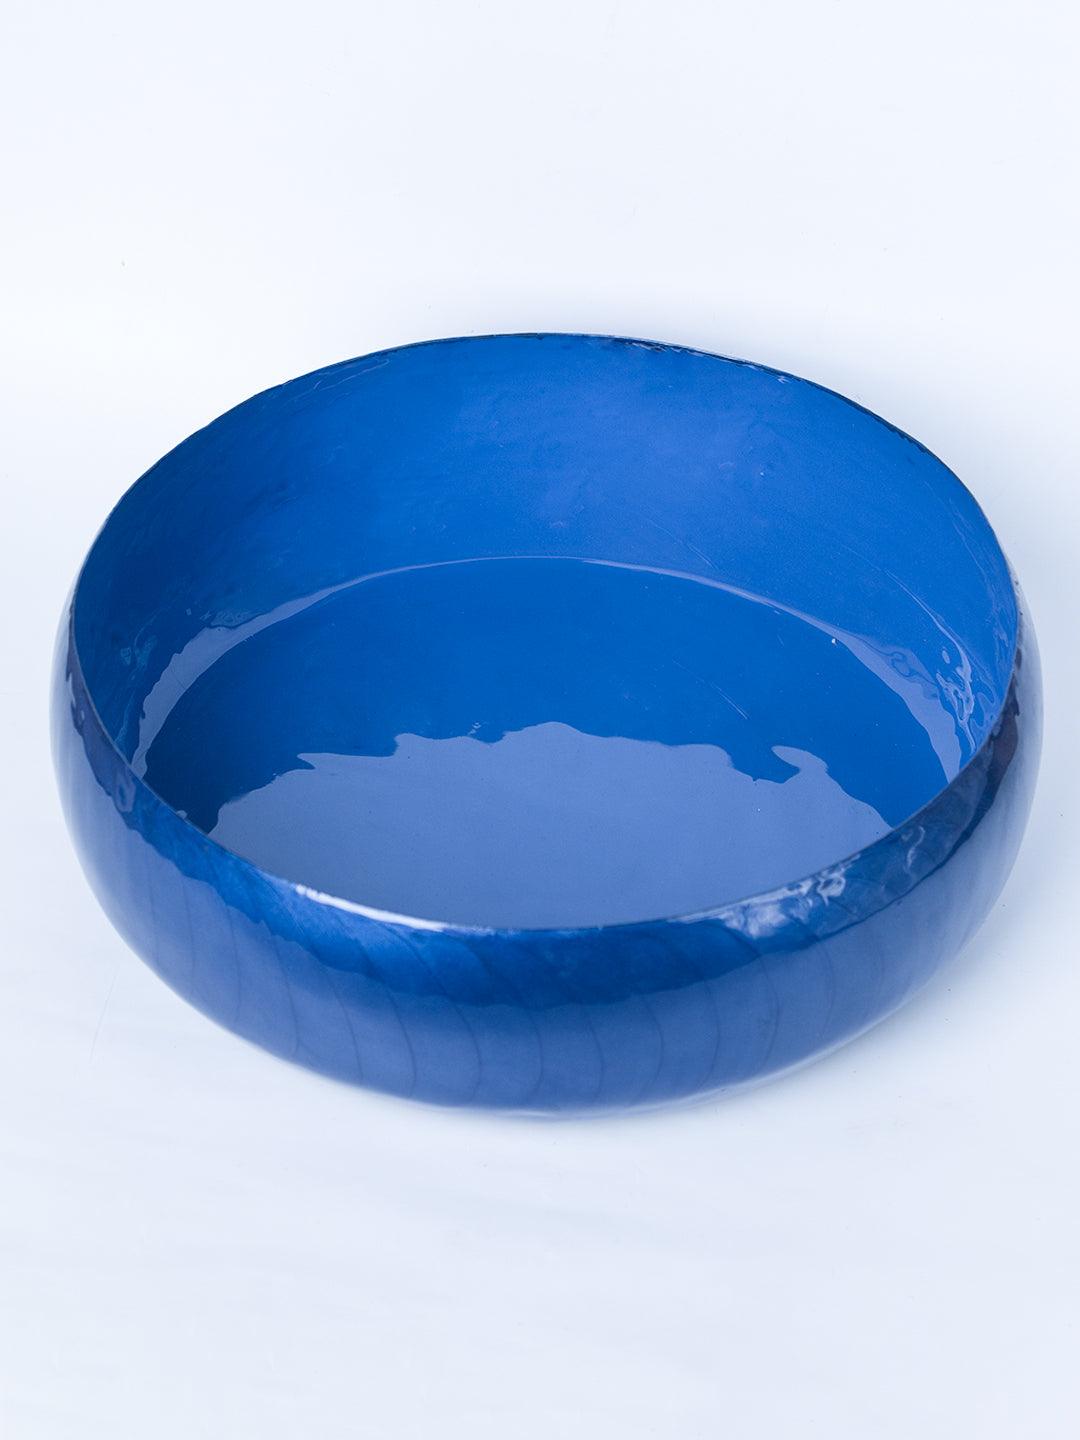 Blue Decorative Bowl (Blue Enamel) - 3